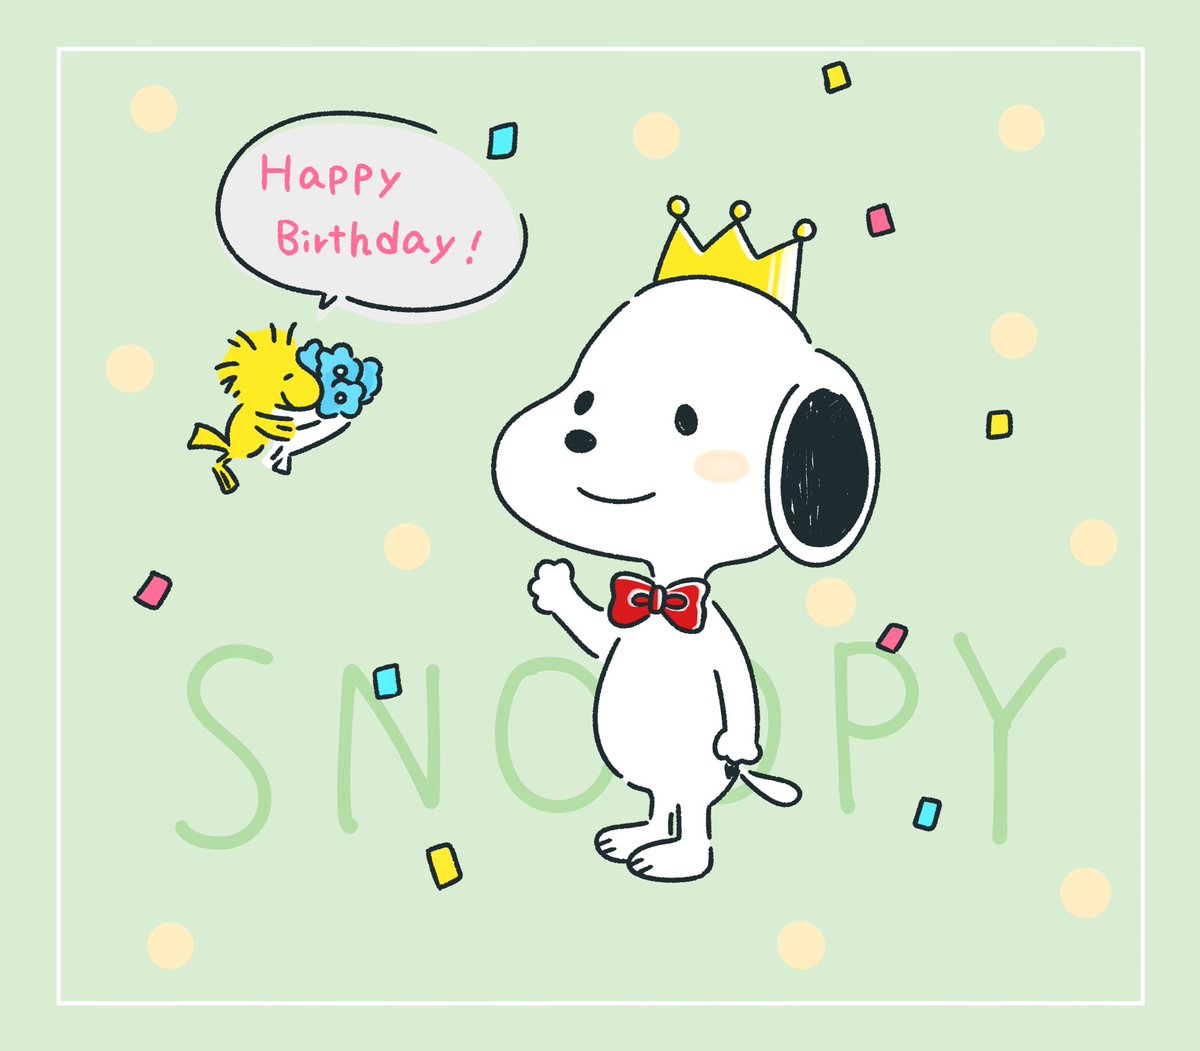 ট ইট র 鳥 早希 スヌーピーが好きで 文房具集めてたなぁ スヌーピー Snoopy Snoopy イラスト 誕生日 ハッピーバースデー Happybirthday らくがき